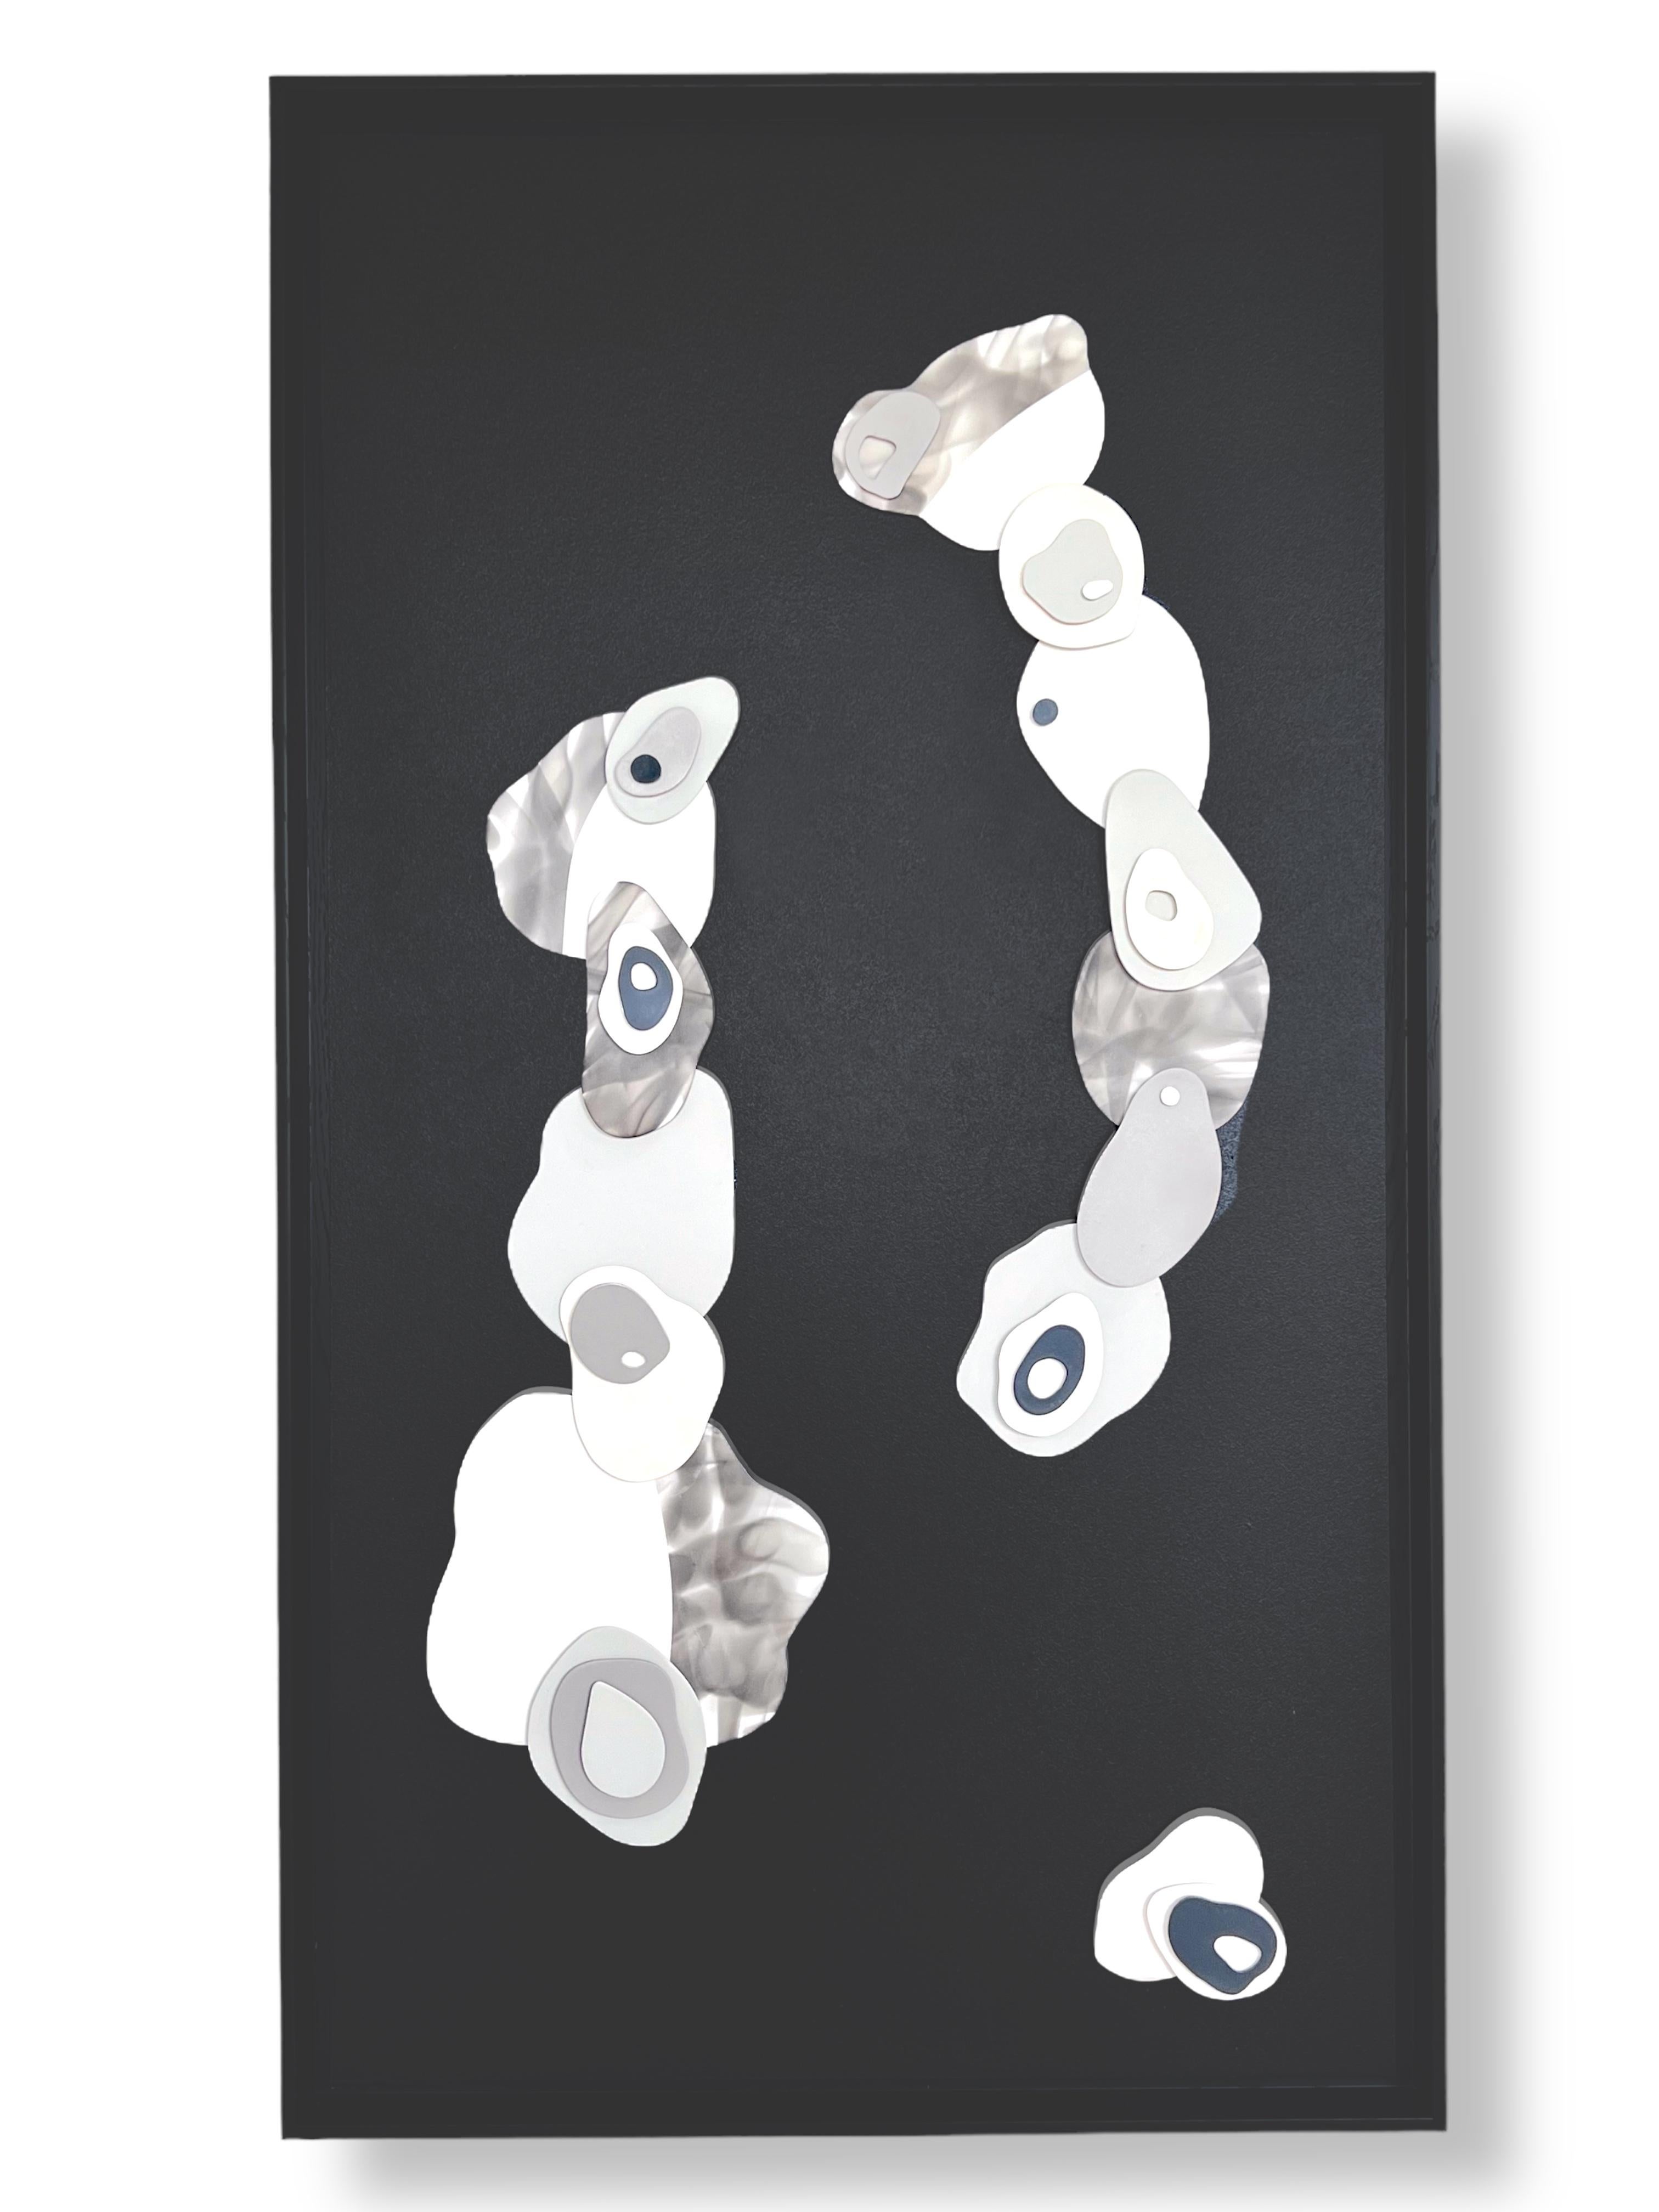 s Nuages II. Formes abstraites, minimalistes et en plâtre 3D sur bois avec cadre noir